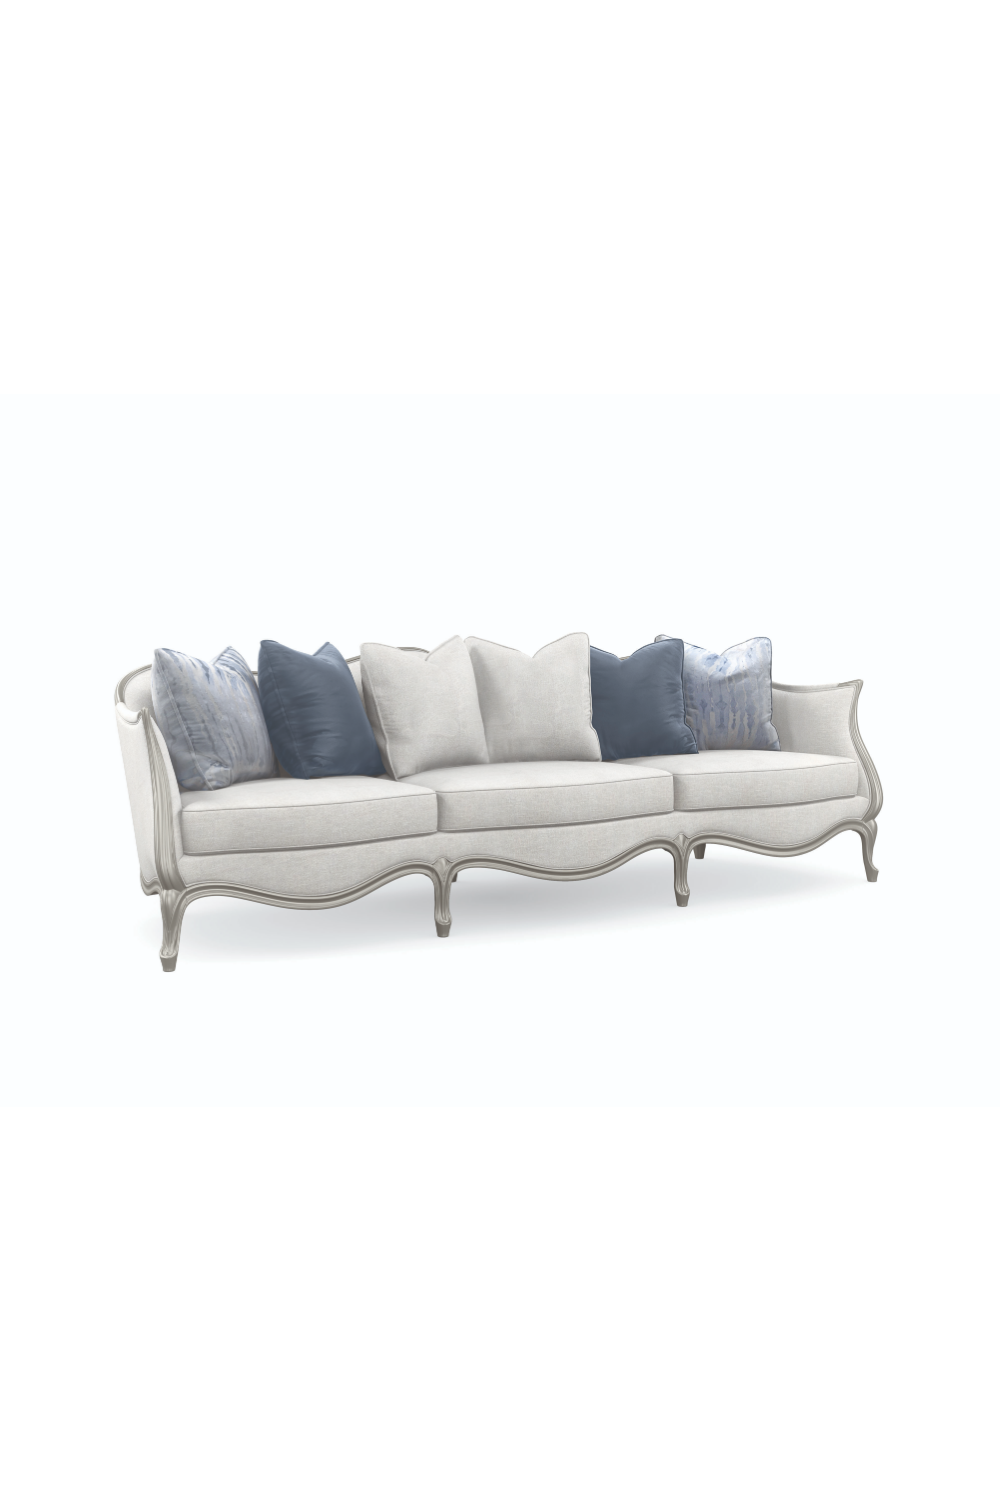 Silver Paint Sofa | Caracole Special Invitation | Oroa.com